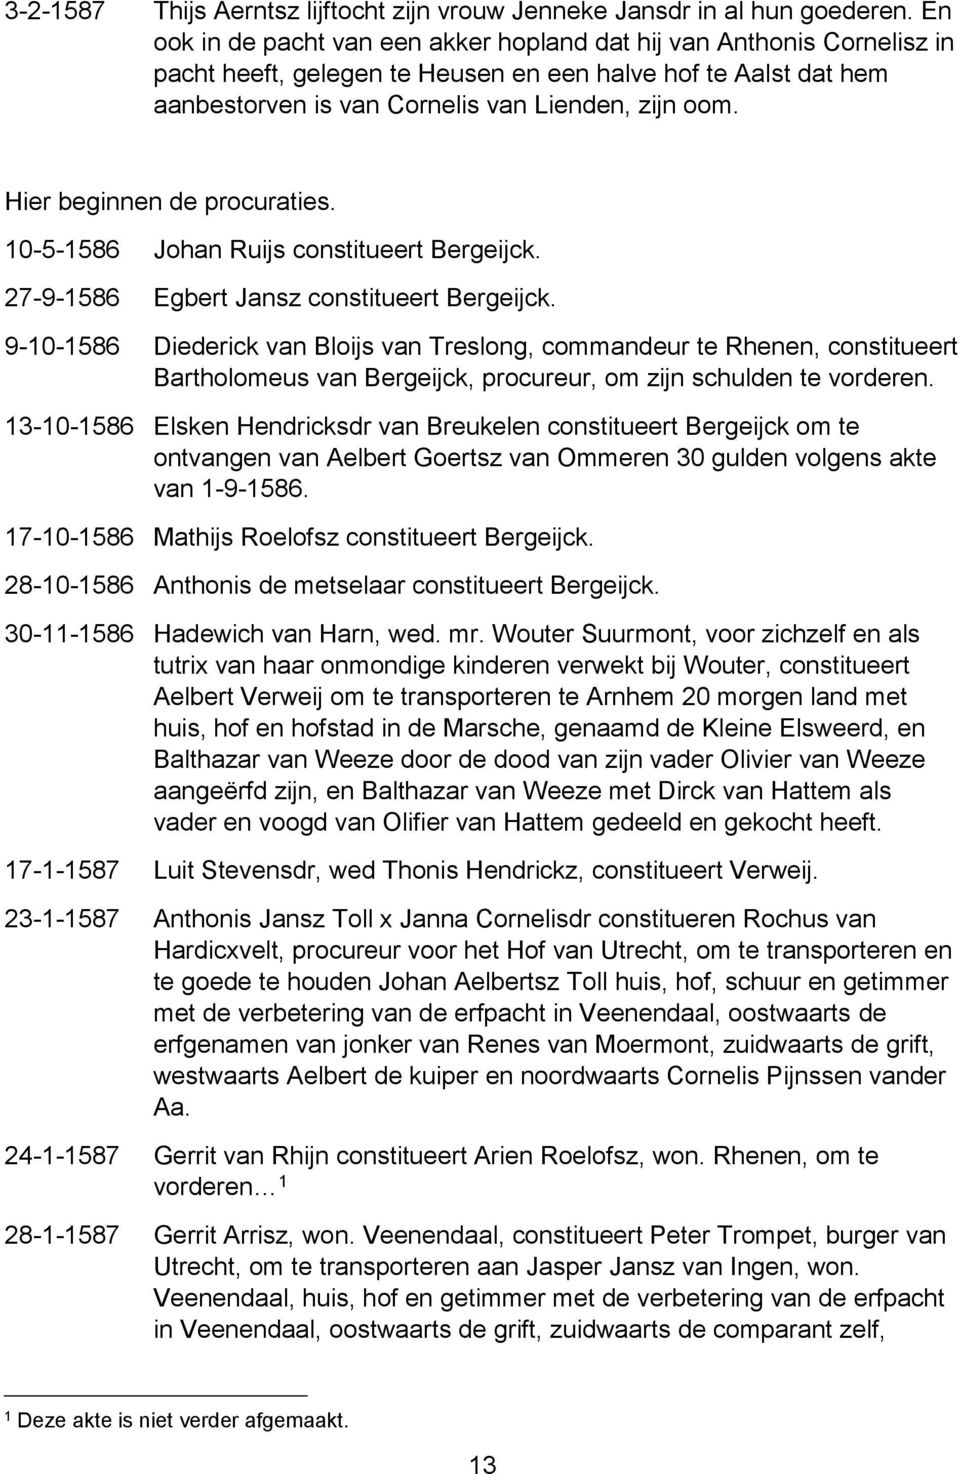 Hier beginnen de procuraties. 10-5-1586 Johan Ruijs constitueert Bergeijck. 27-9-1586 Egbert Jansz constitueert Bergeijck.